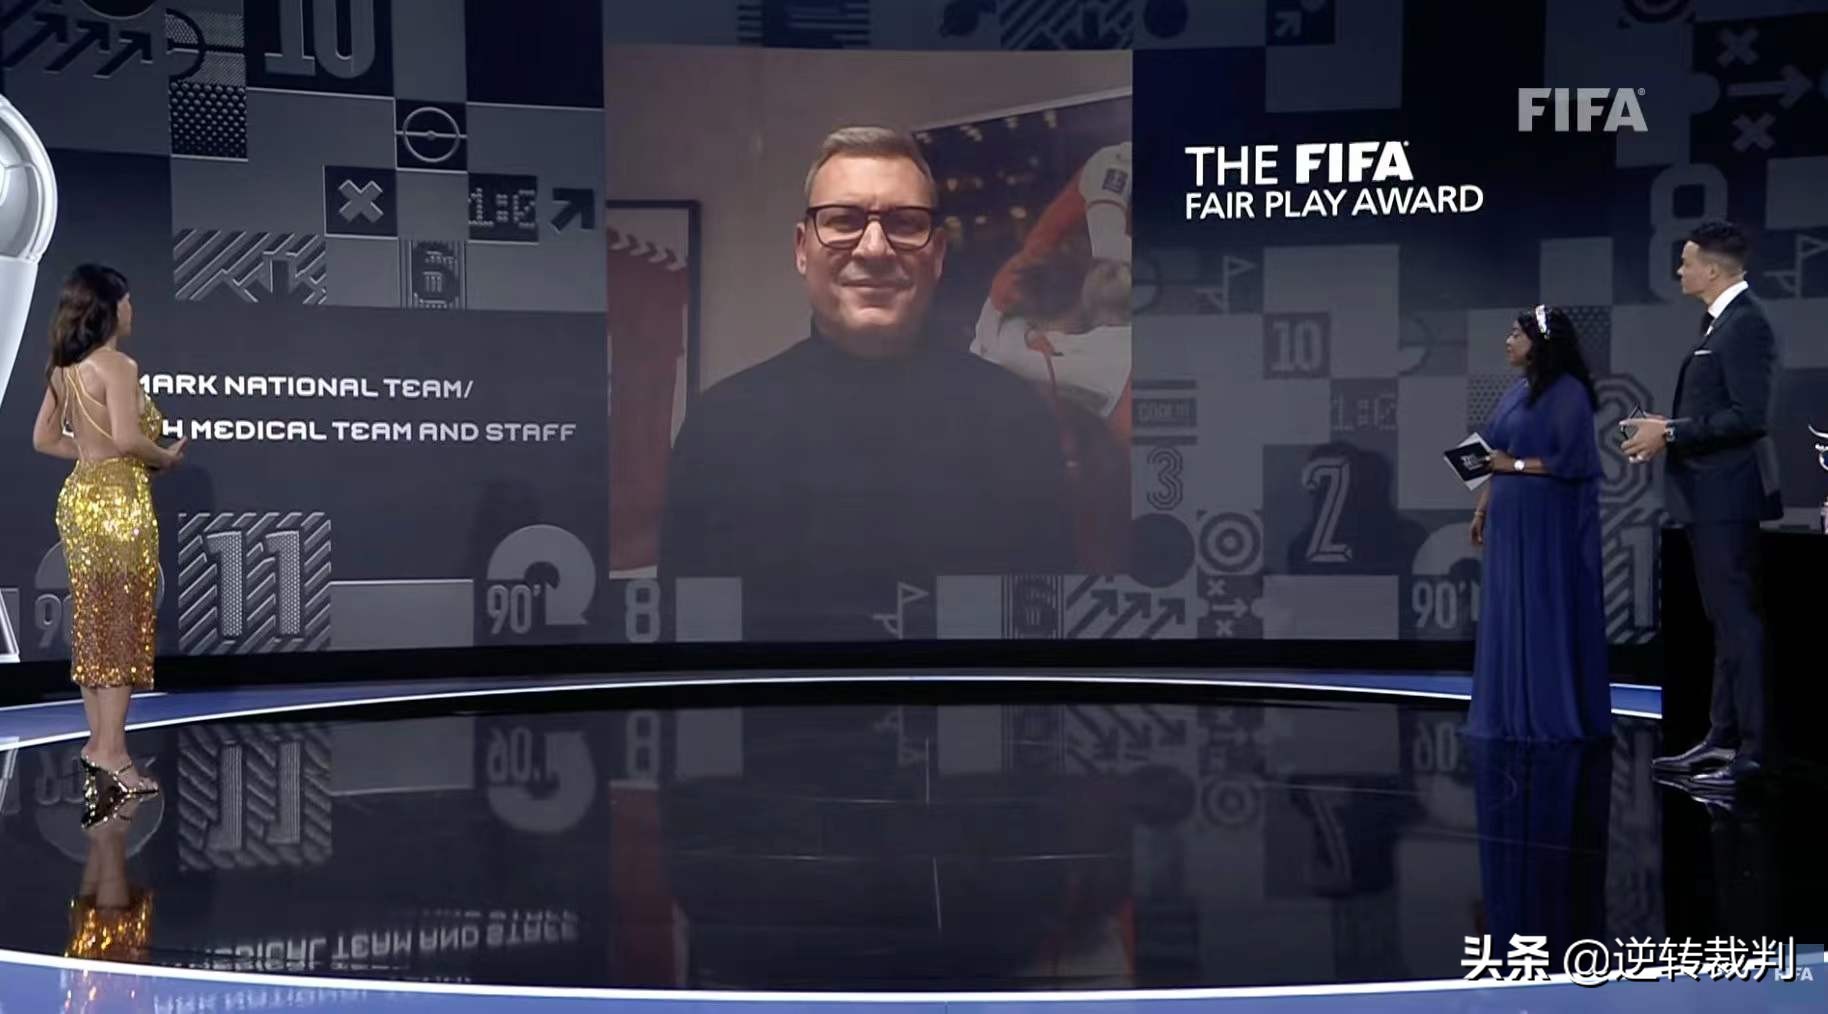 2018fifa世界杯观后感(丹麦队及其医疗团队获得FIFA公平竞赛奖有感)